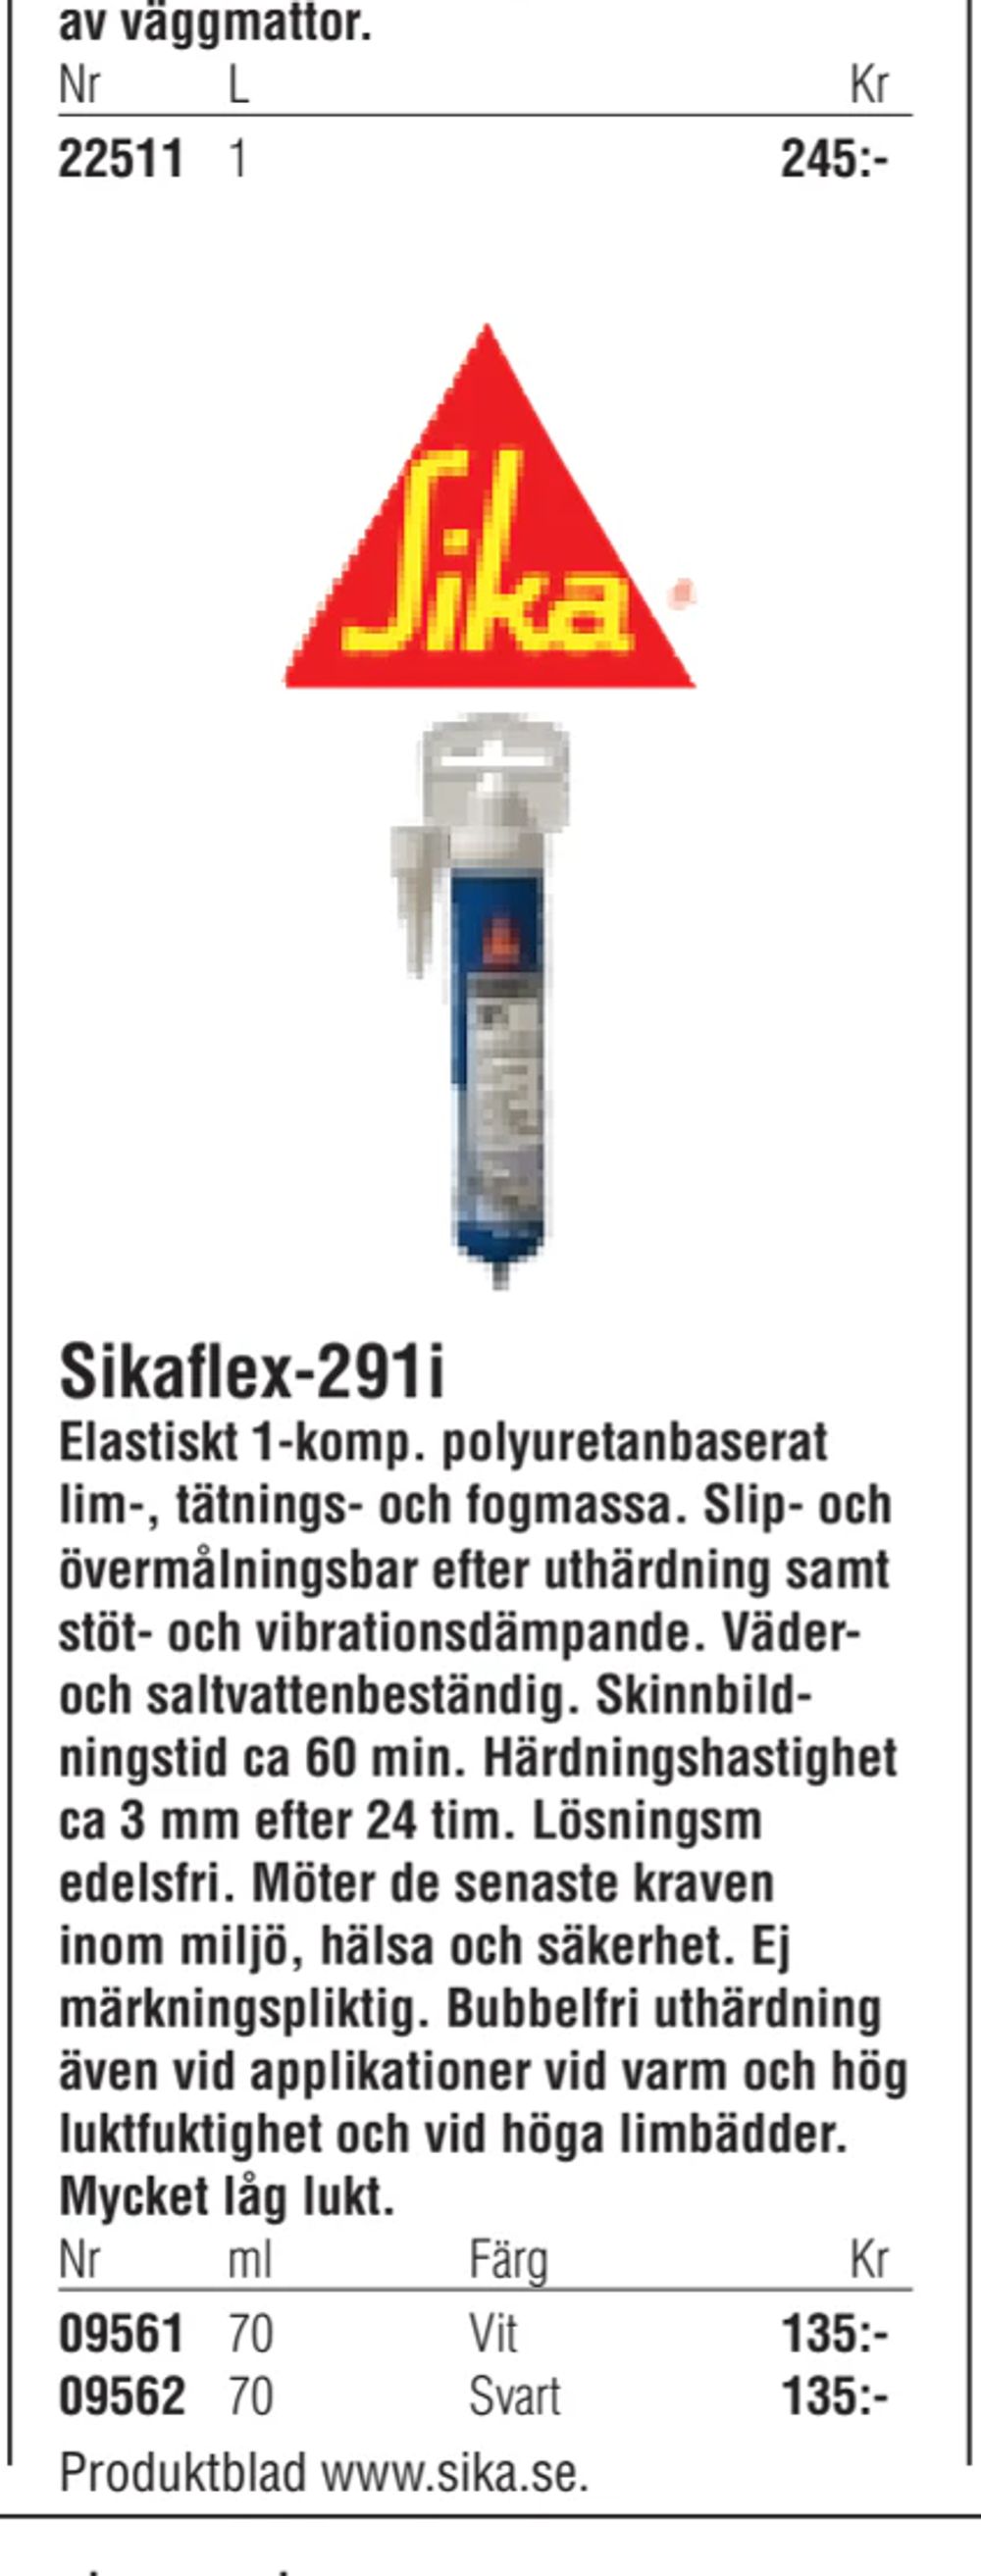 Erbjudanden på Sikaflex-291i från Erlandsons Brygga för 135 kr